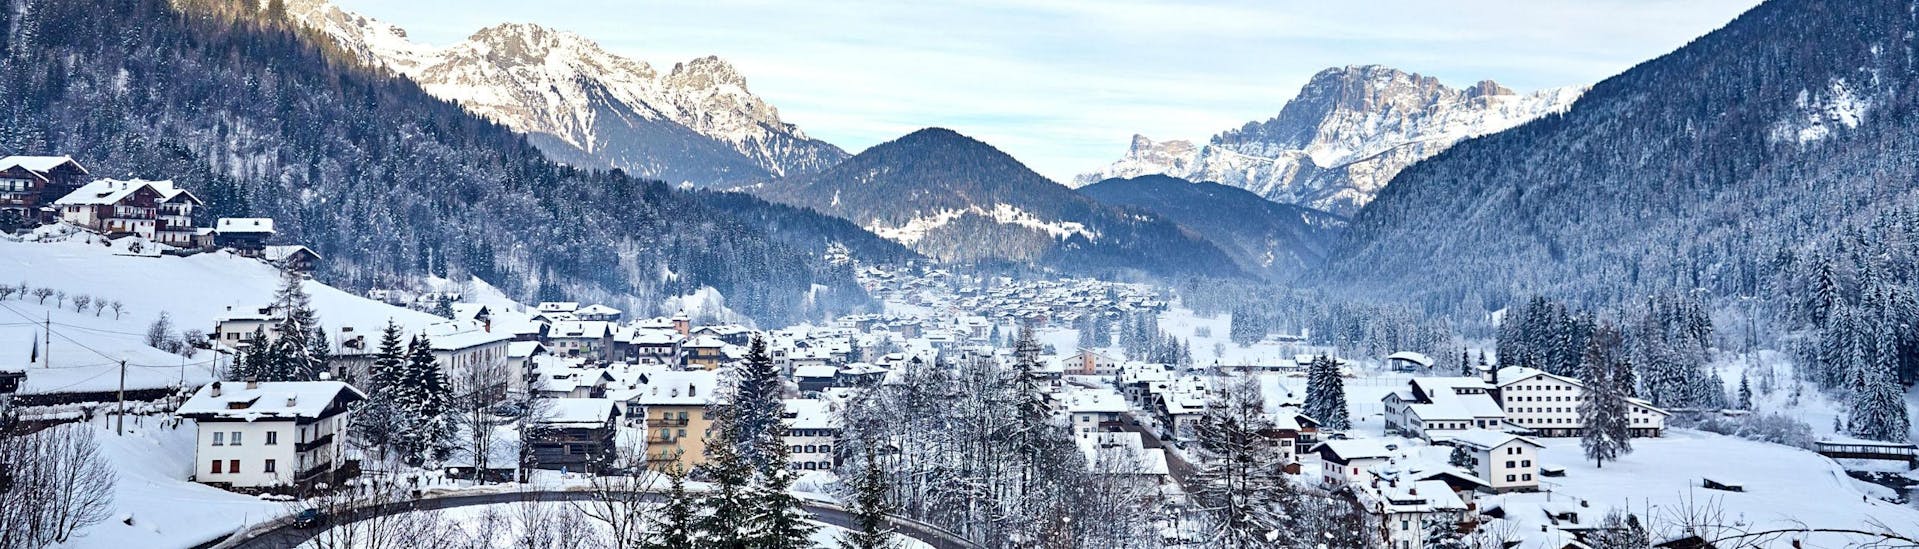 Ein Blick auf Falcade, einem malerischen italienischen Dorf in den Bergen, wo angehende Skifahrer bei einer der örtlichen Skischulen einen Skikurs buchen können.